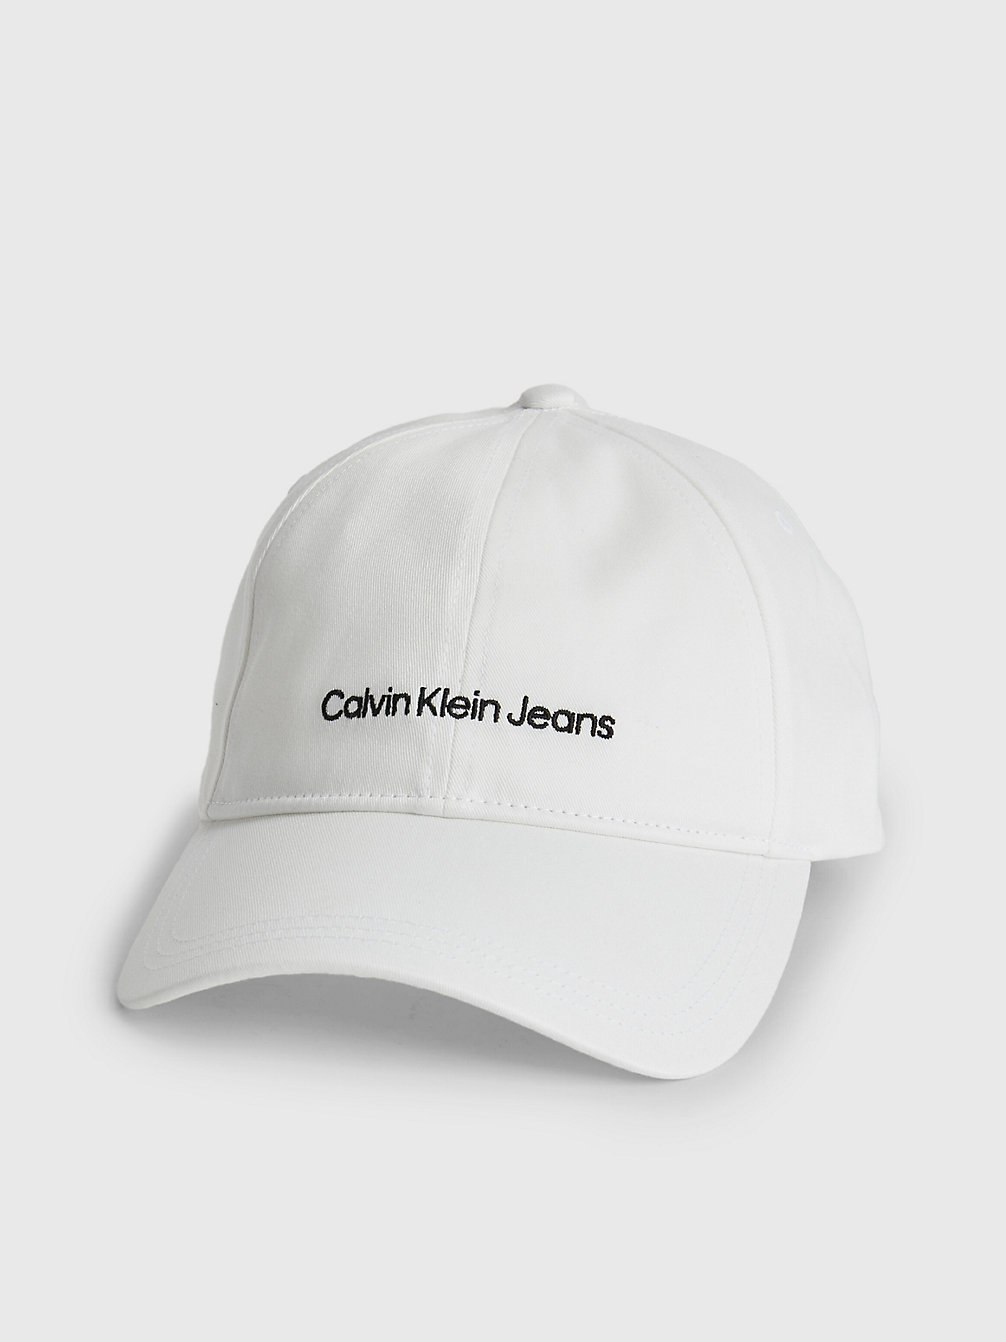 BRIGHT WHITE > Pet Van Biologisch Katoen Met Logo > undefined heren - Calvin Klein